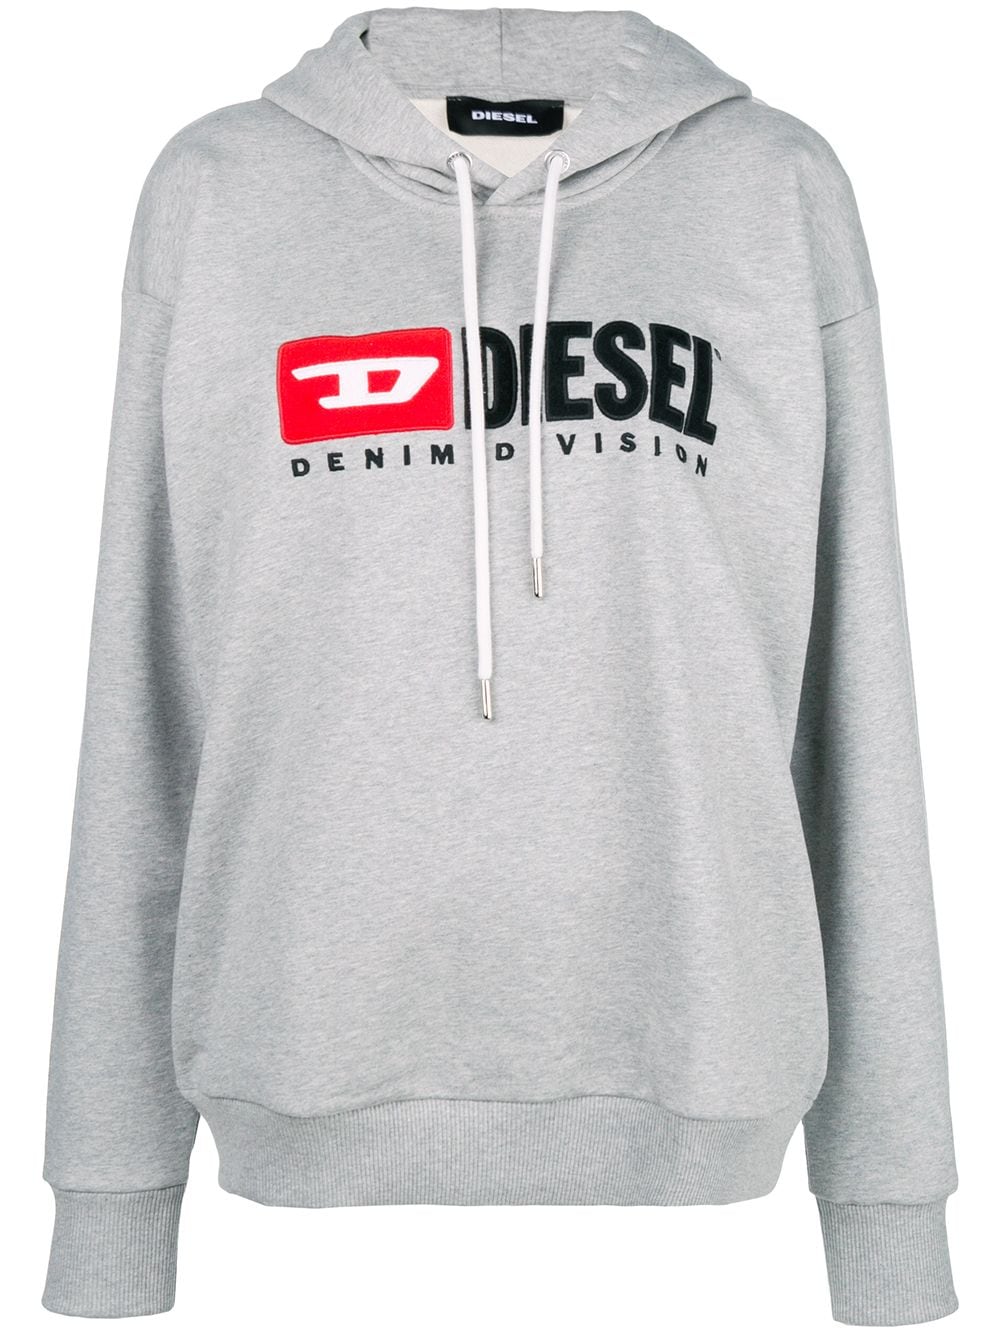 Diesel Denim Vision logo hoodie от Diesel